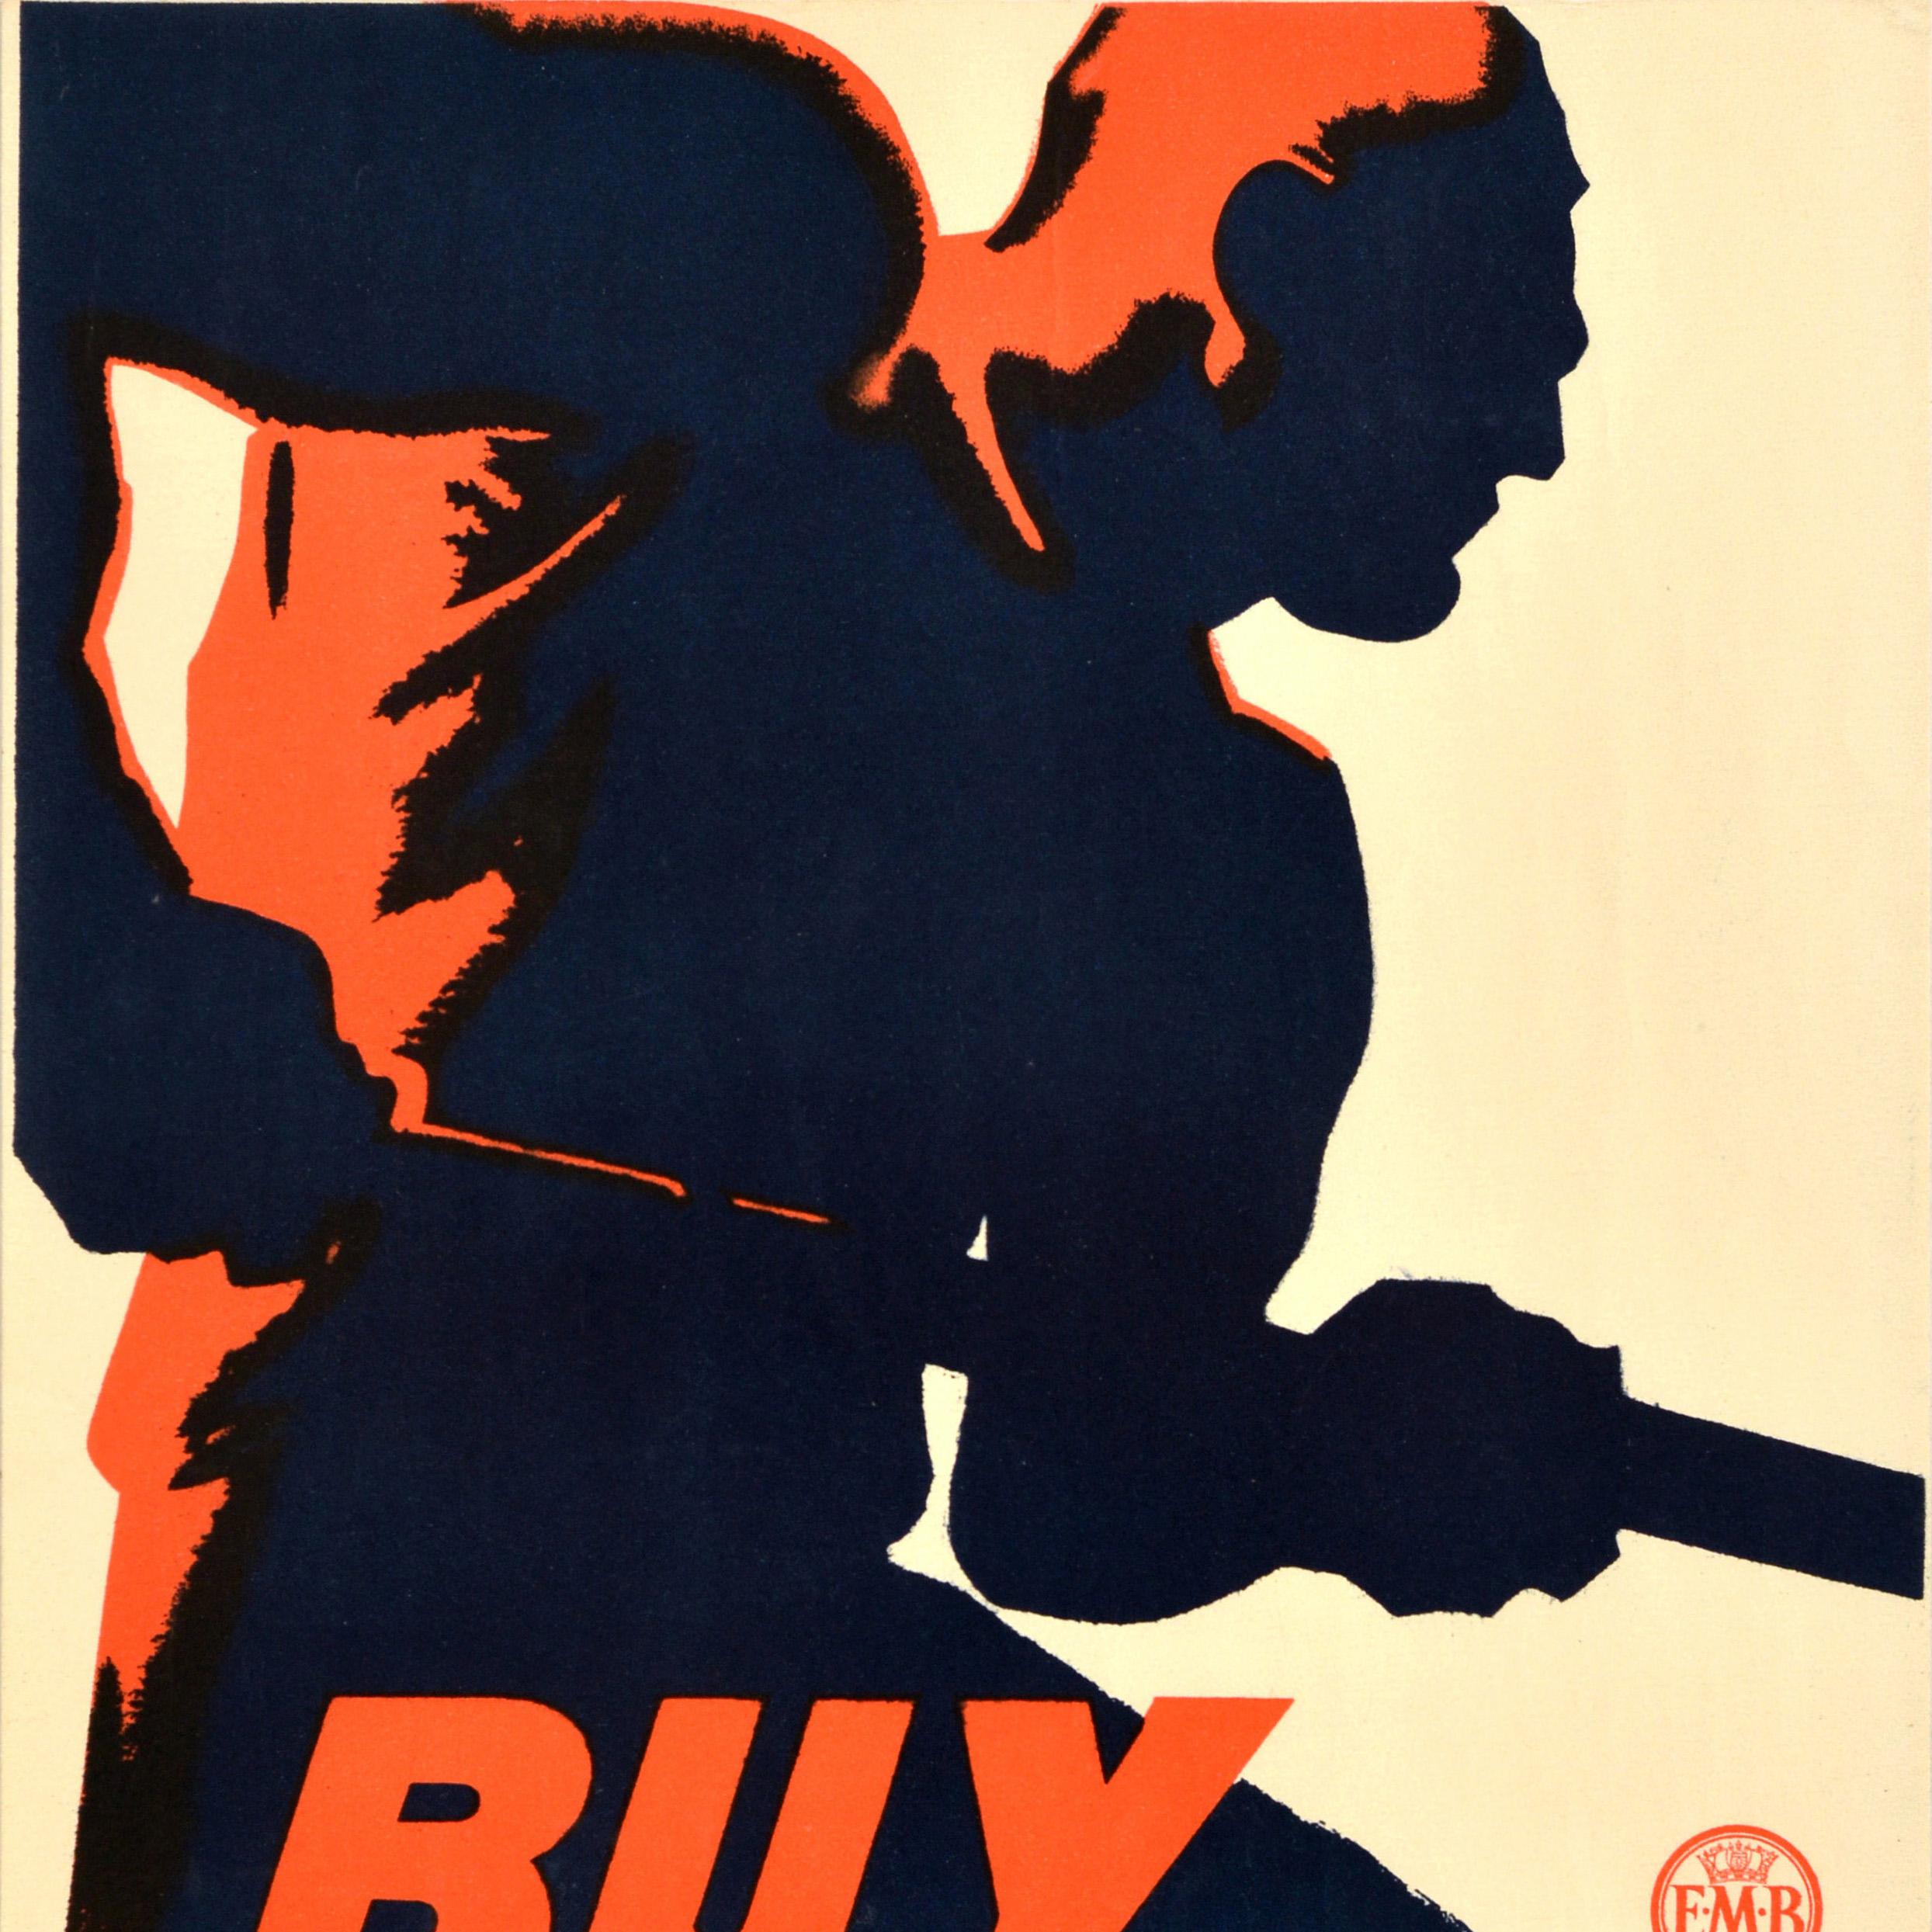 Affiche originale publiée par l'Empire Marketing Board EMB pour encourager les gens à aider l'économie américaine à la suite de la Grande Dépression en achetant des produits britanniques - Buy British from the Empire at Home & Overseas - avec un